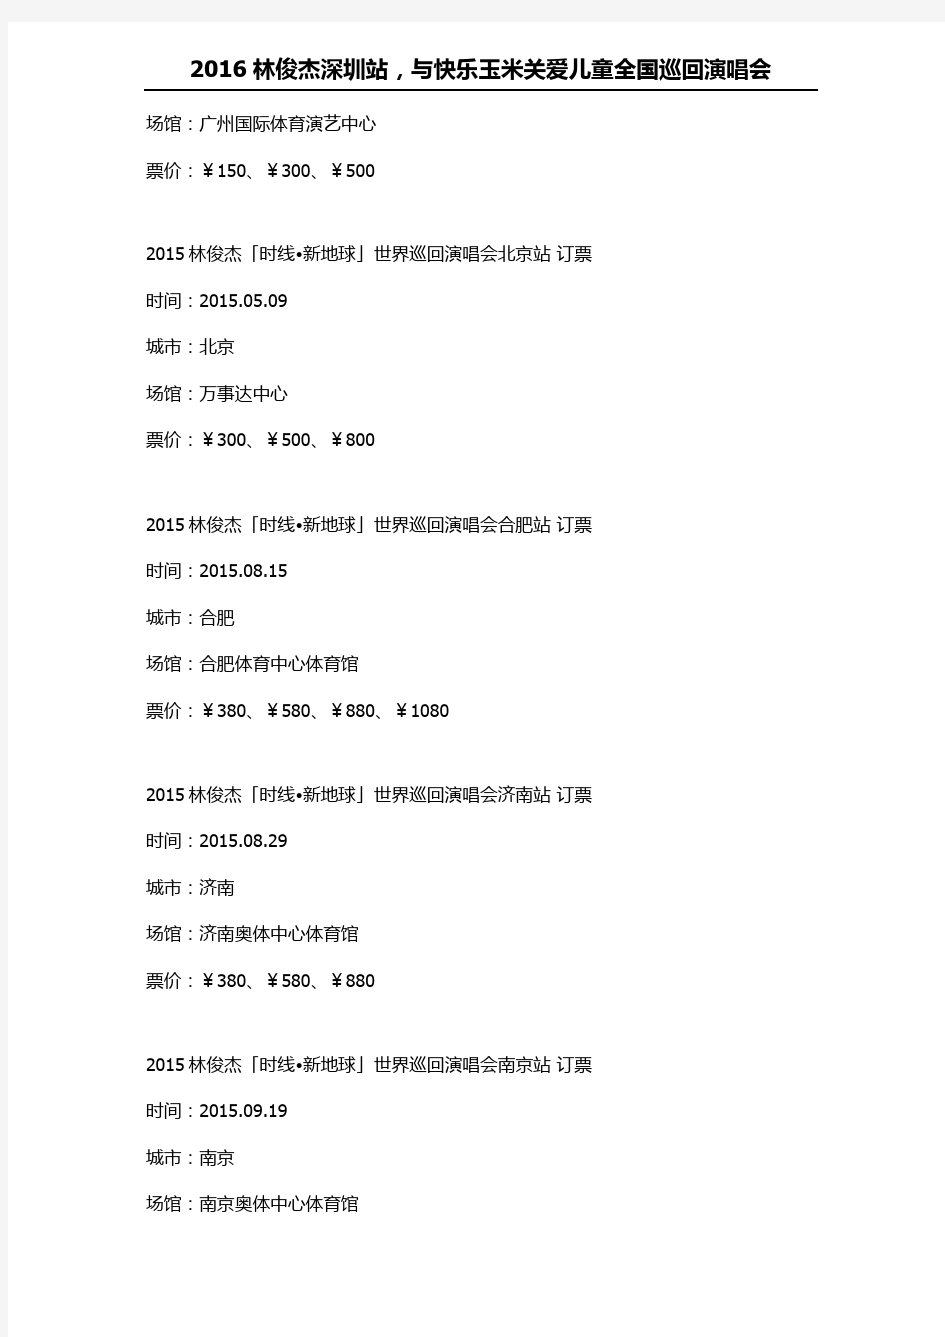 2016林俊杰演唱会行程表